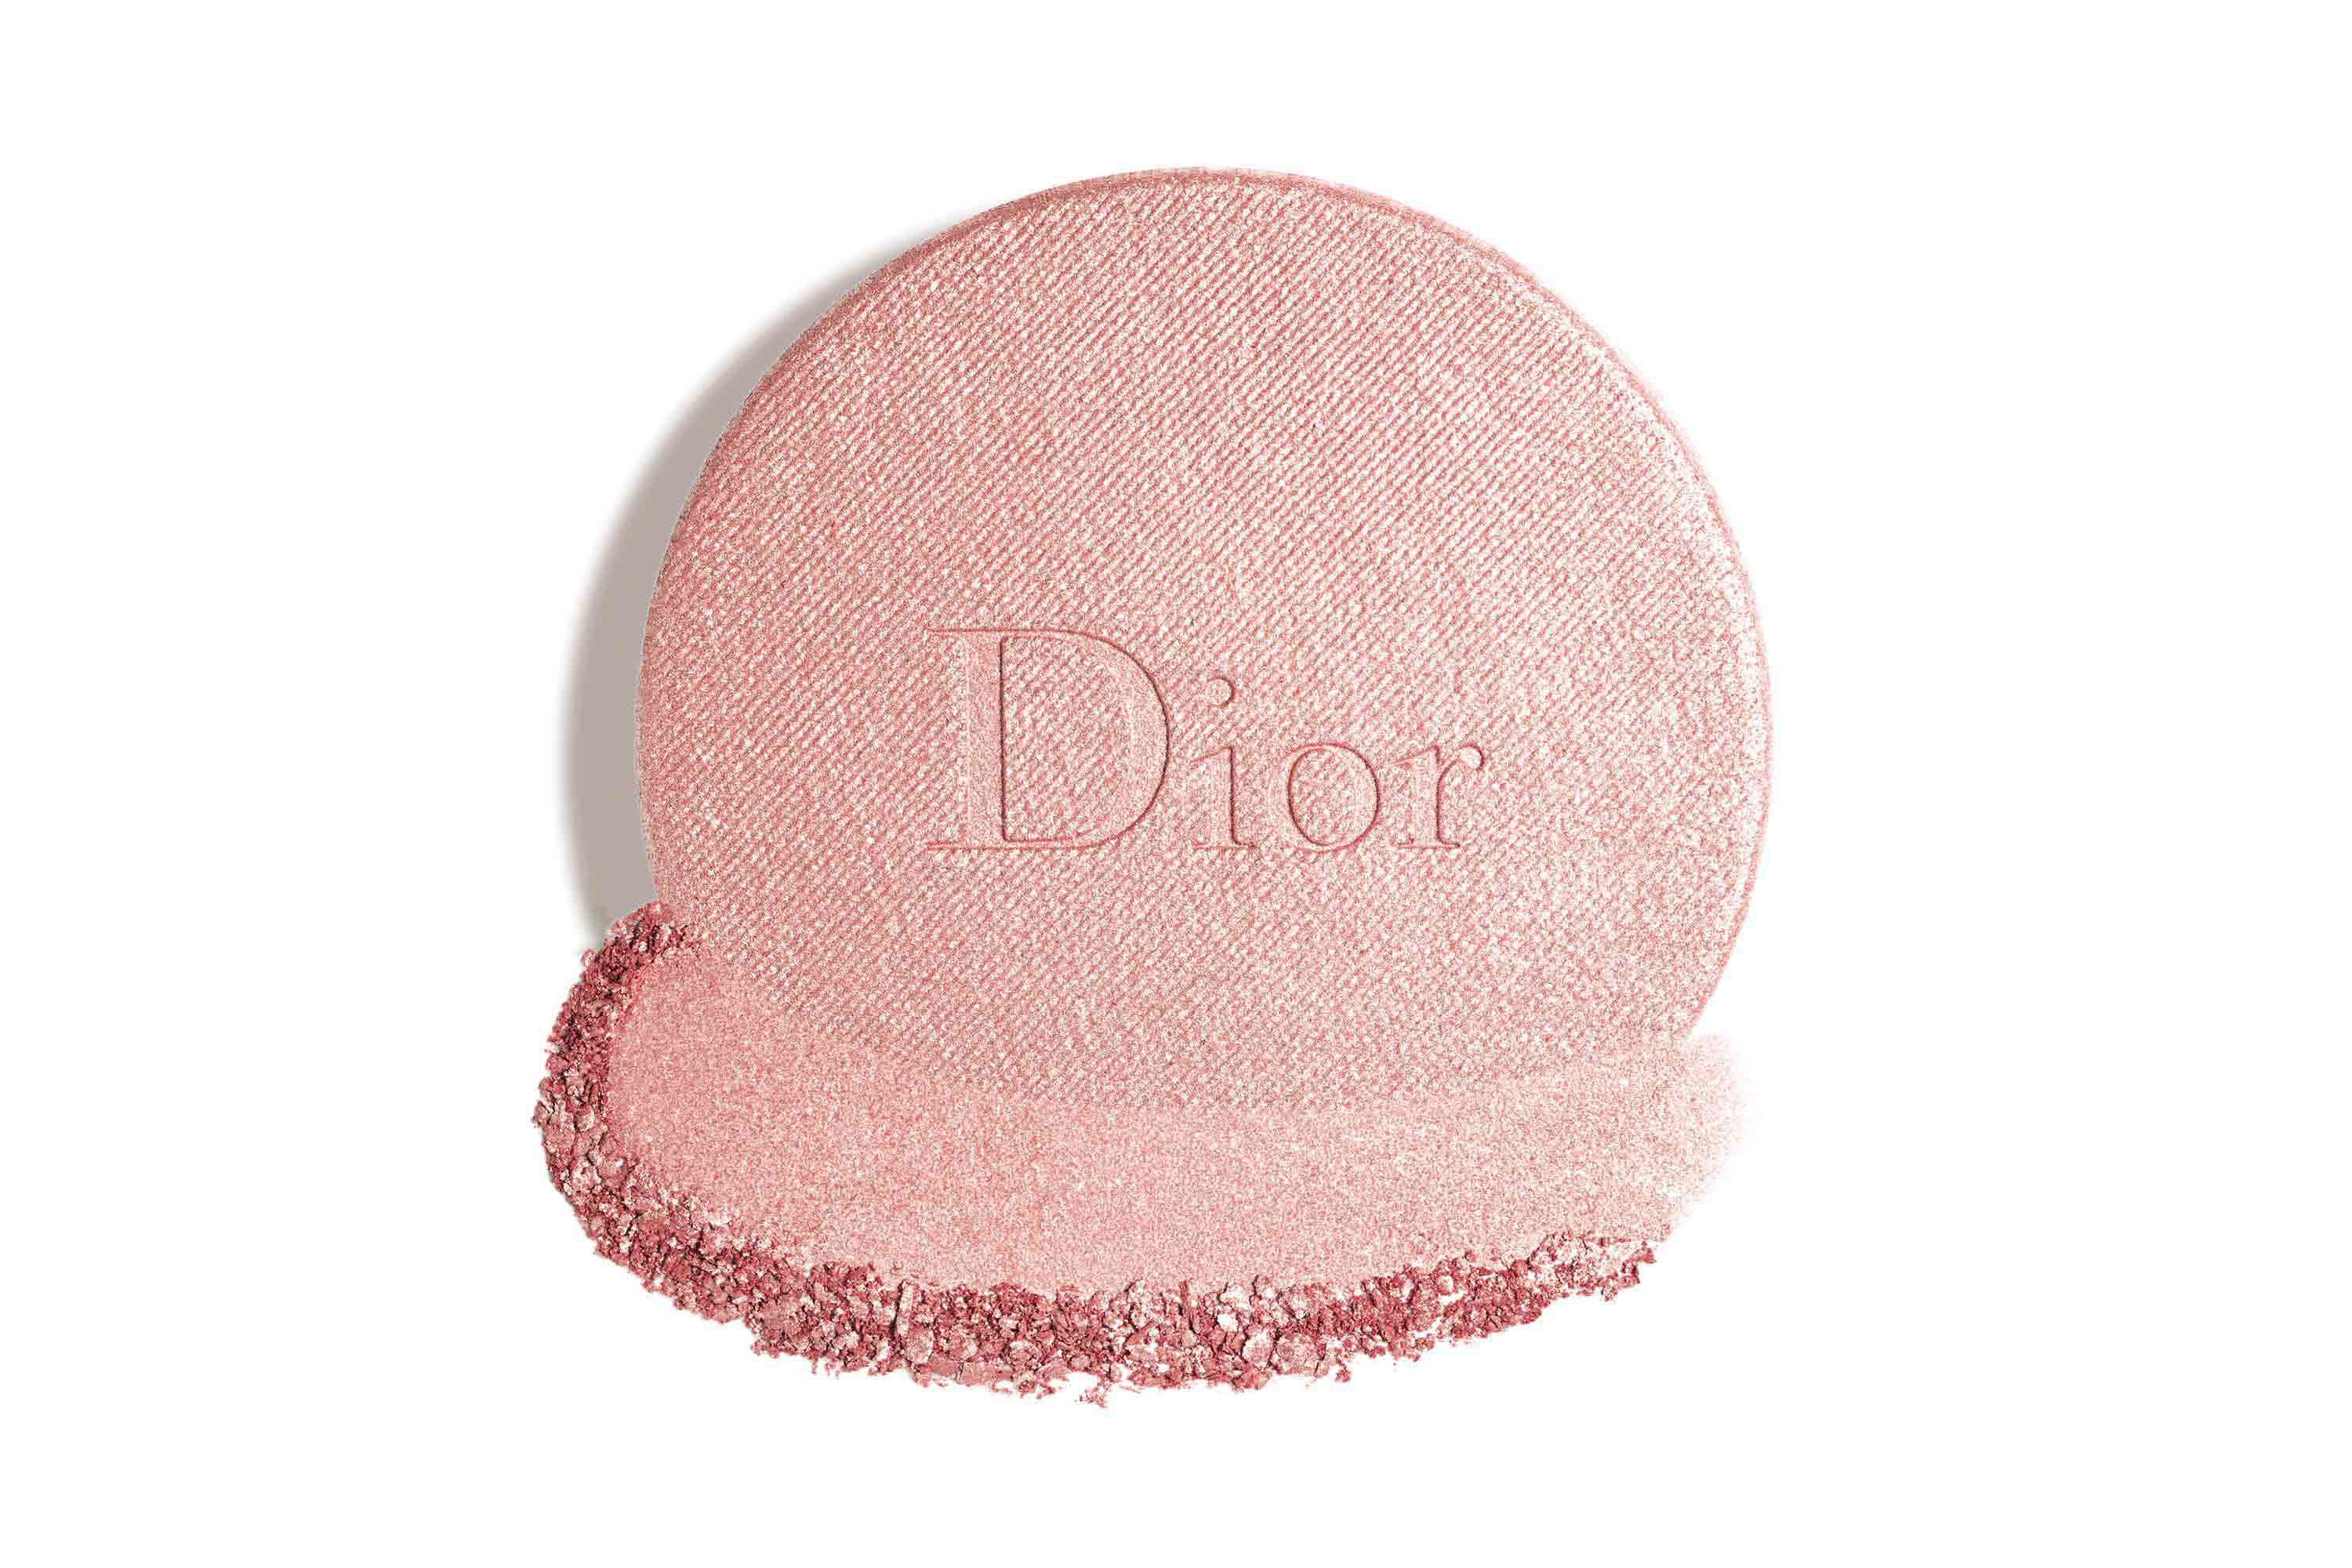 Dior(ディオール) スキン フォーエヴァー クチュール ルミナイザーの商品画像サムネ2 